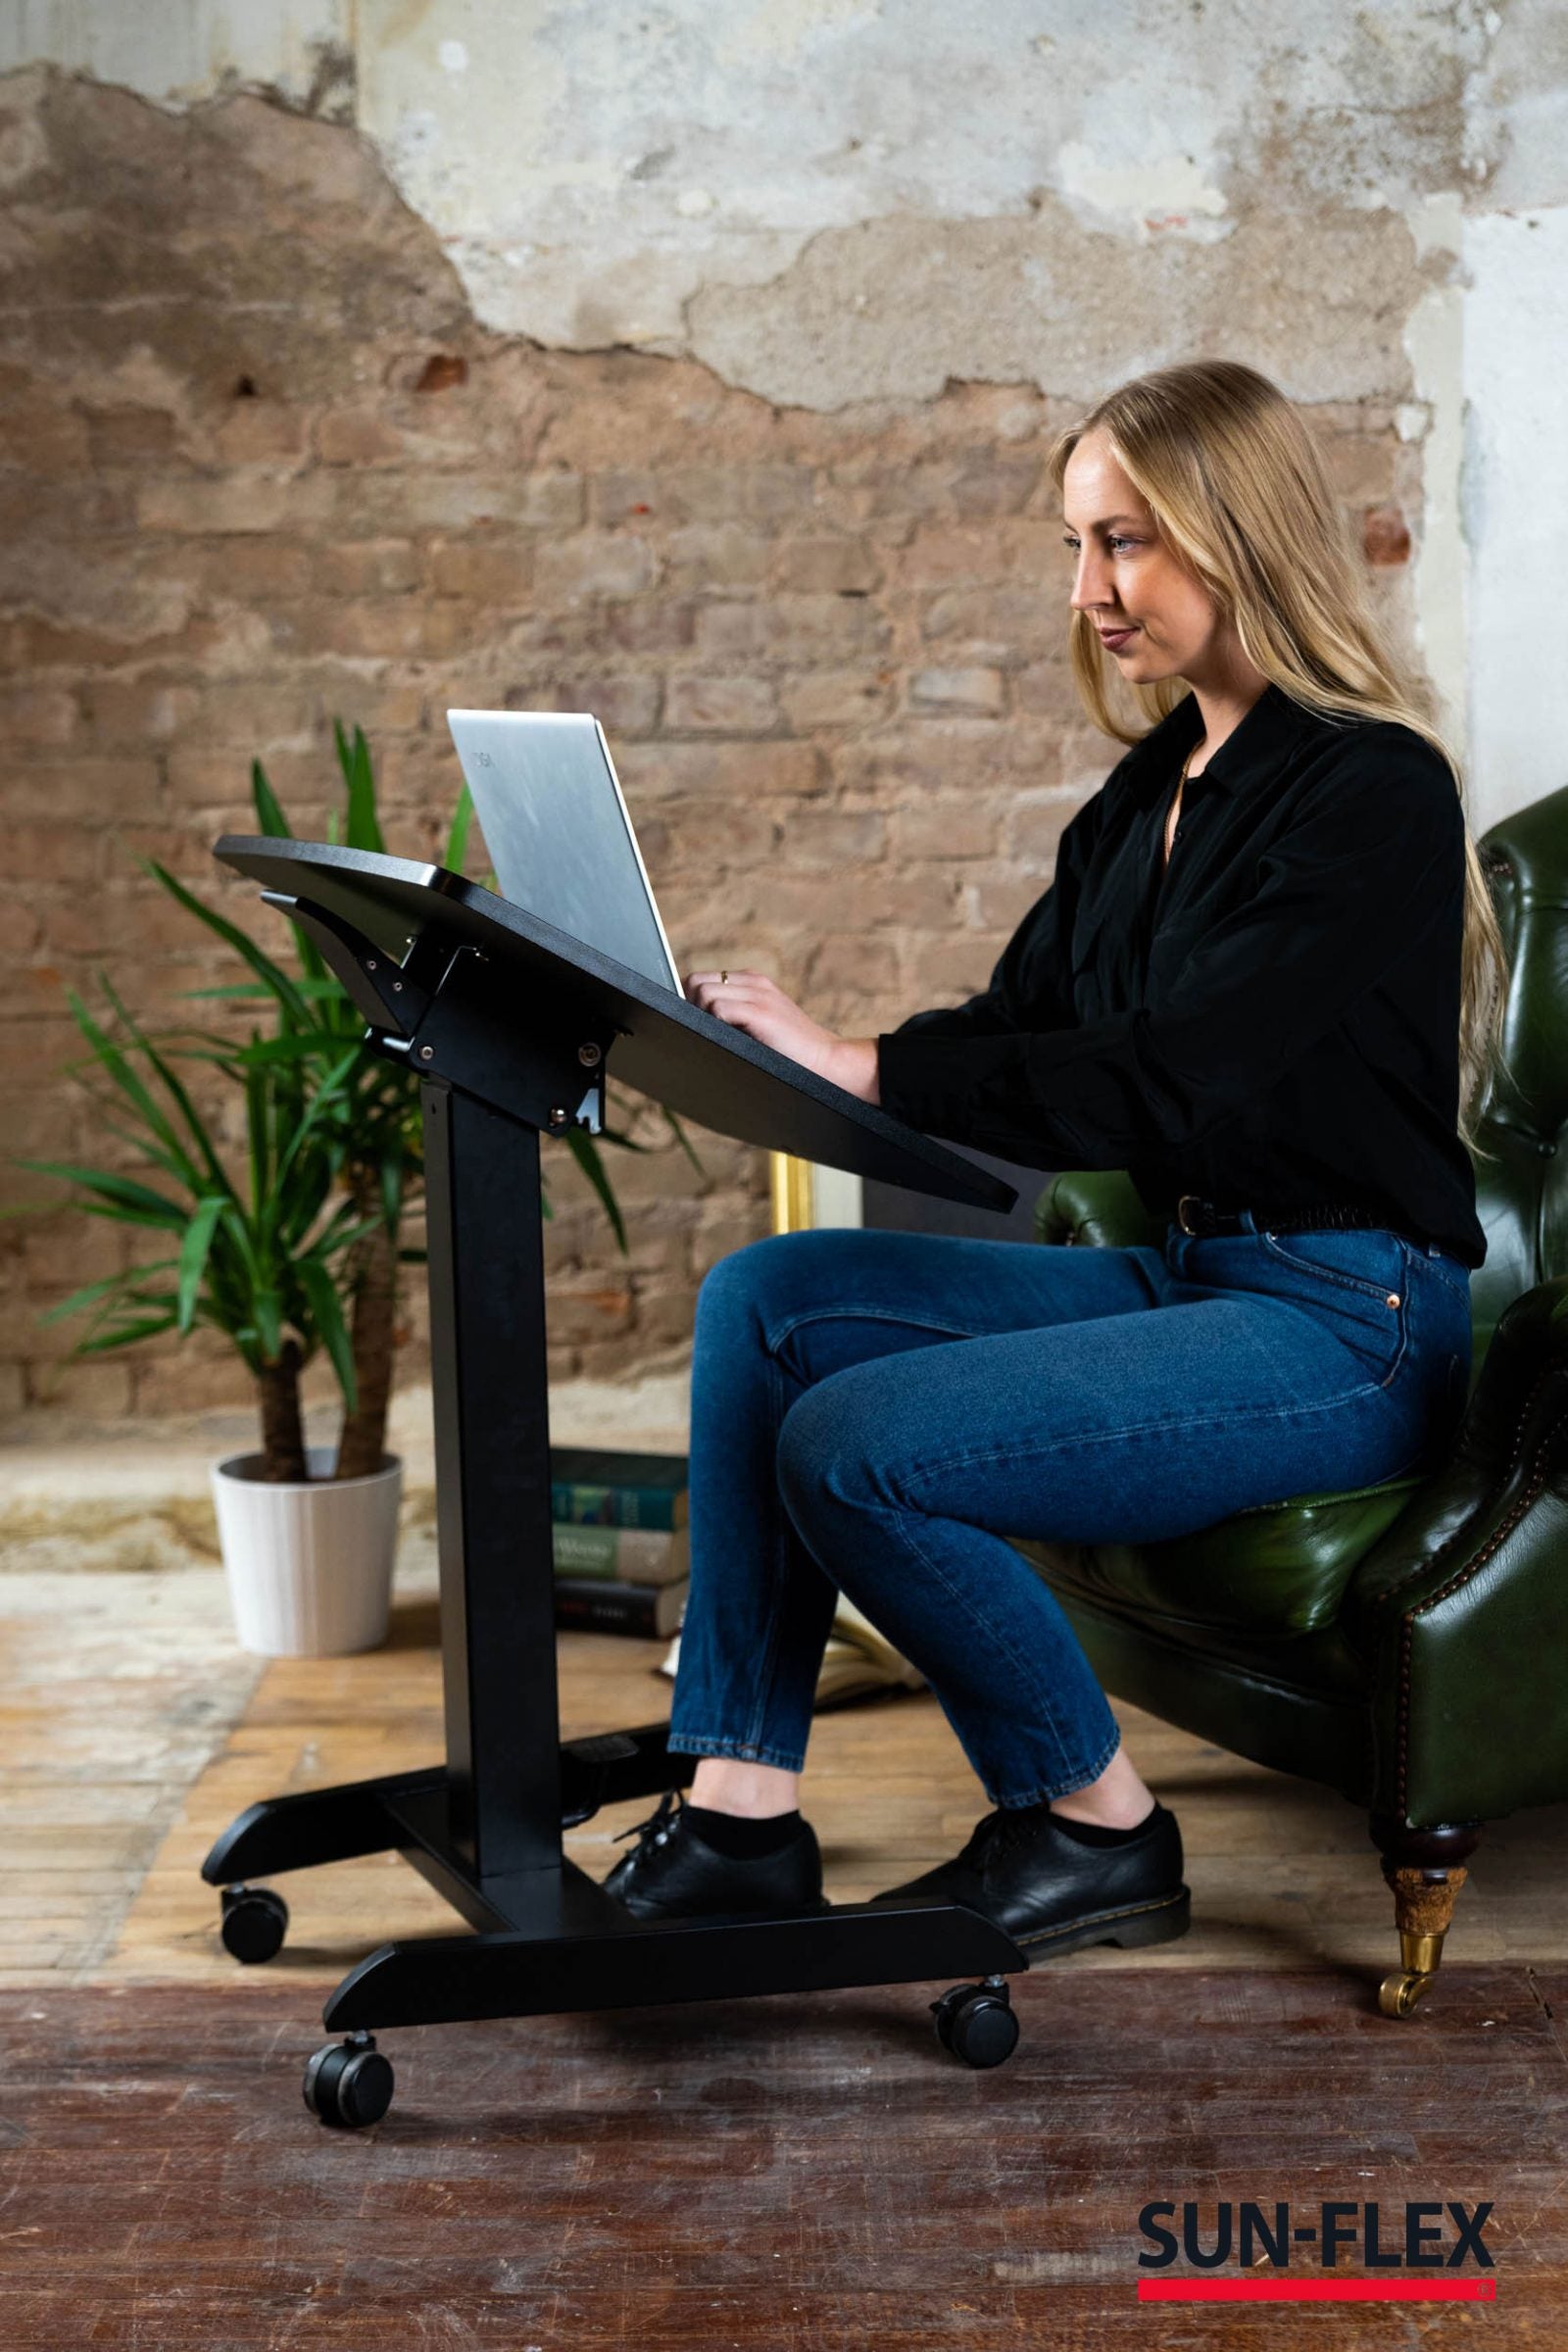 kvinna framför ett praktiskt kompakt skrivbord med portabilitet och höj- och sänkbar funktionalitet för hemmakontoret.